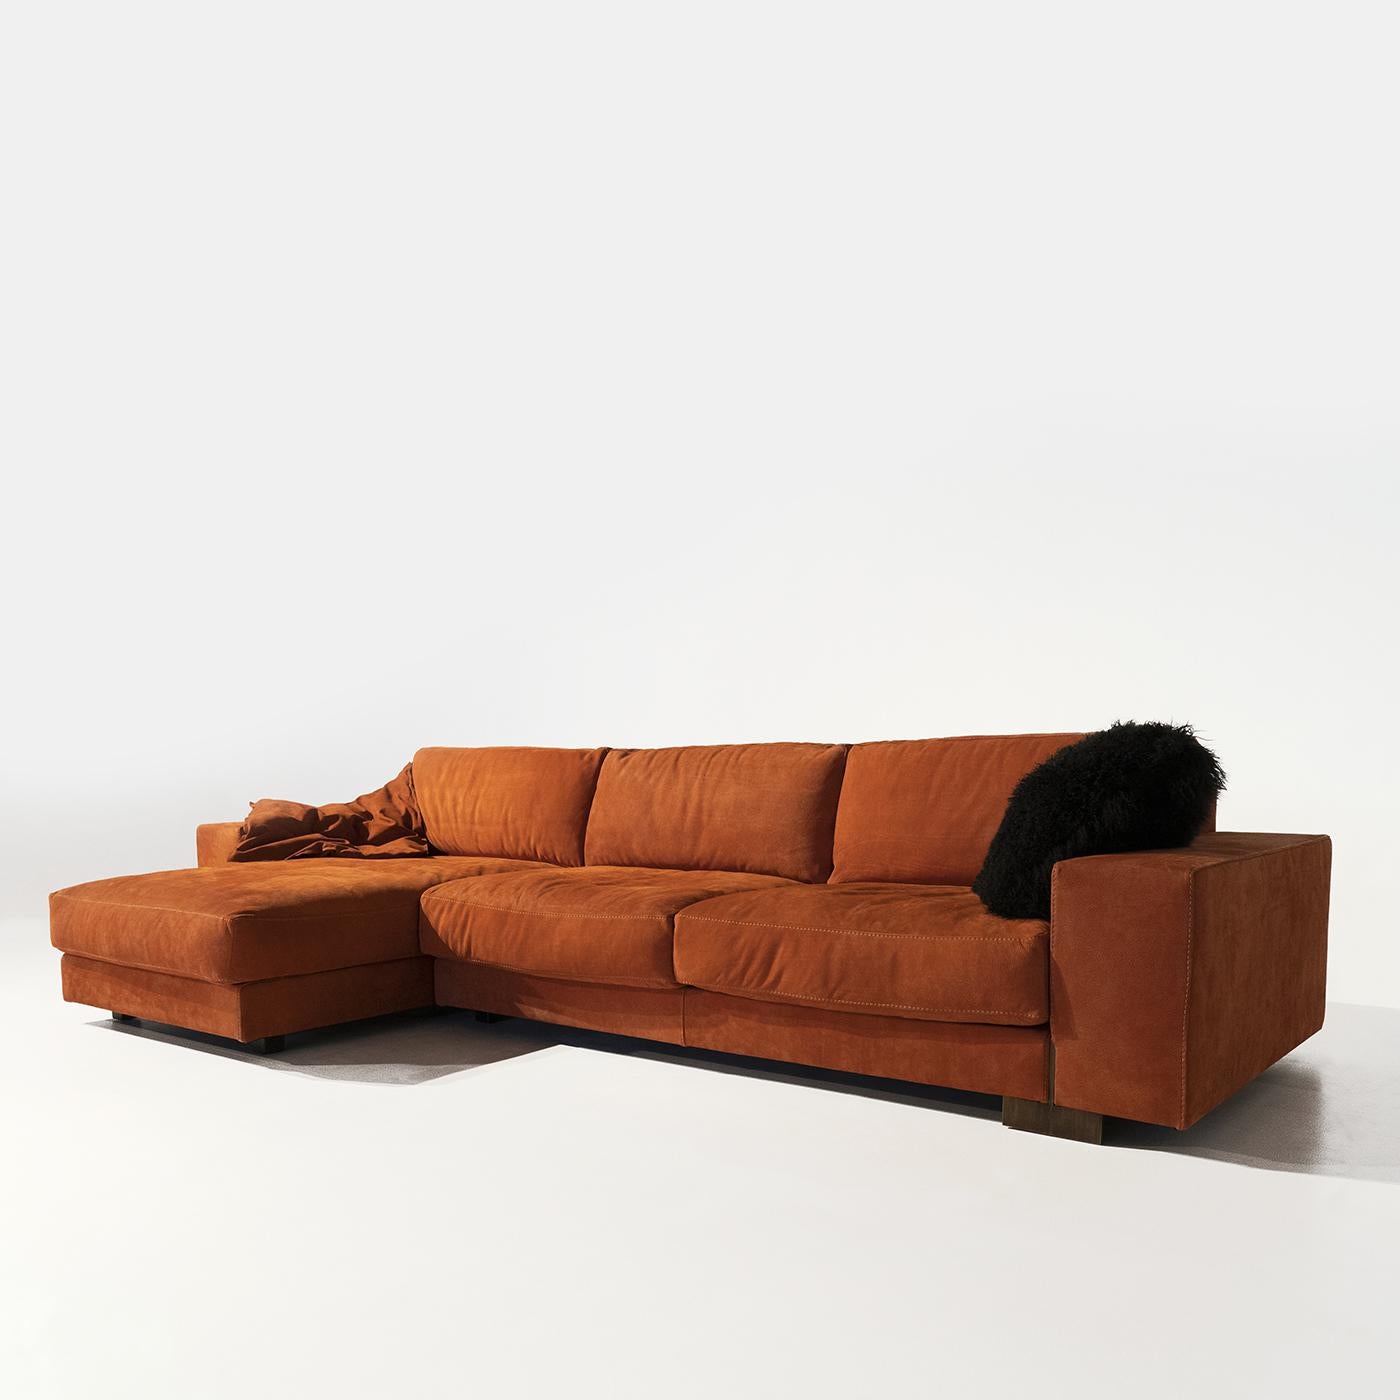 Le canapé Glam représente la quintessence du canapé modulaire moderne, créant une sensation de chaleur dans le salon avec son revêtement en tissu rouge profond. Associant un corps géométrique à des coussins moelleux en polyuréthane double densité et